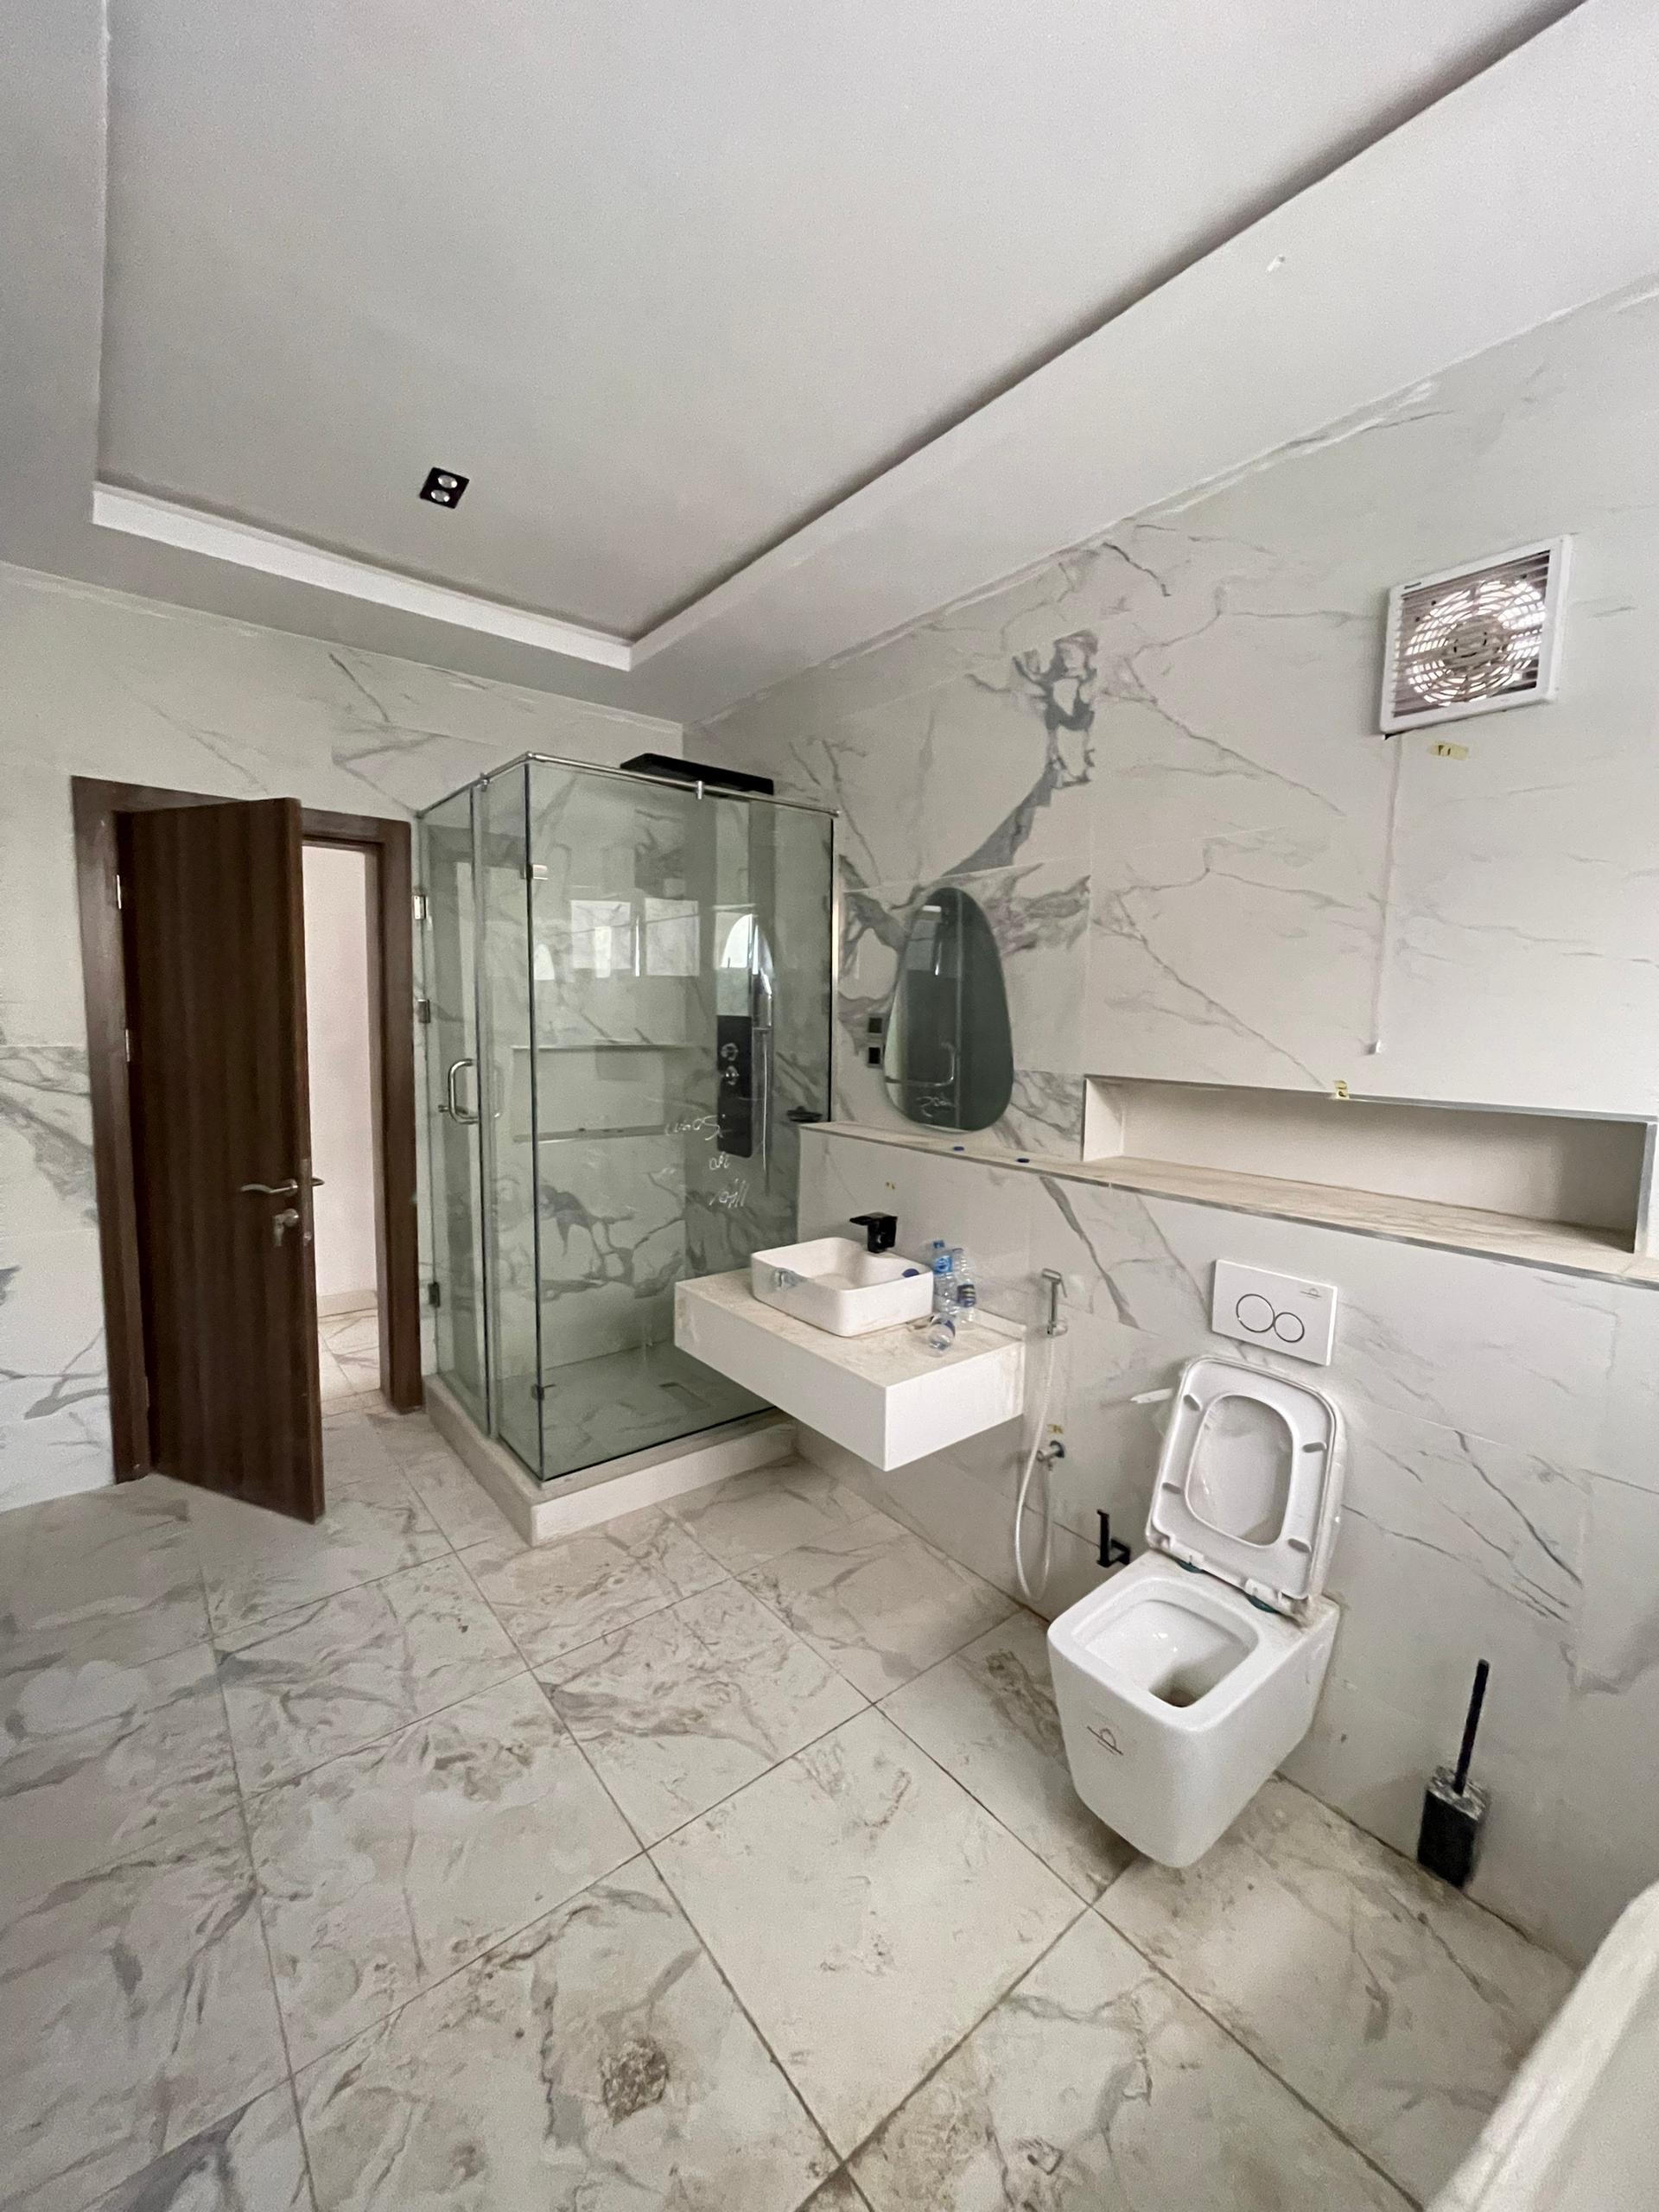 Luxury 5 bedroom duplex - Toilet